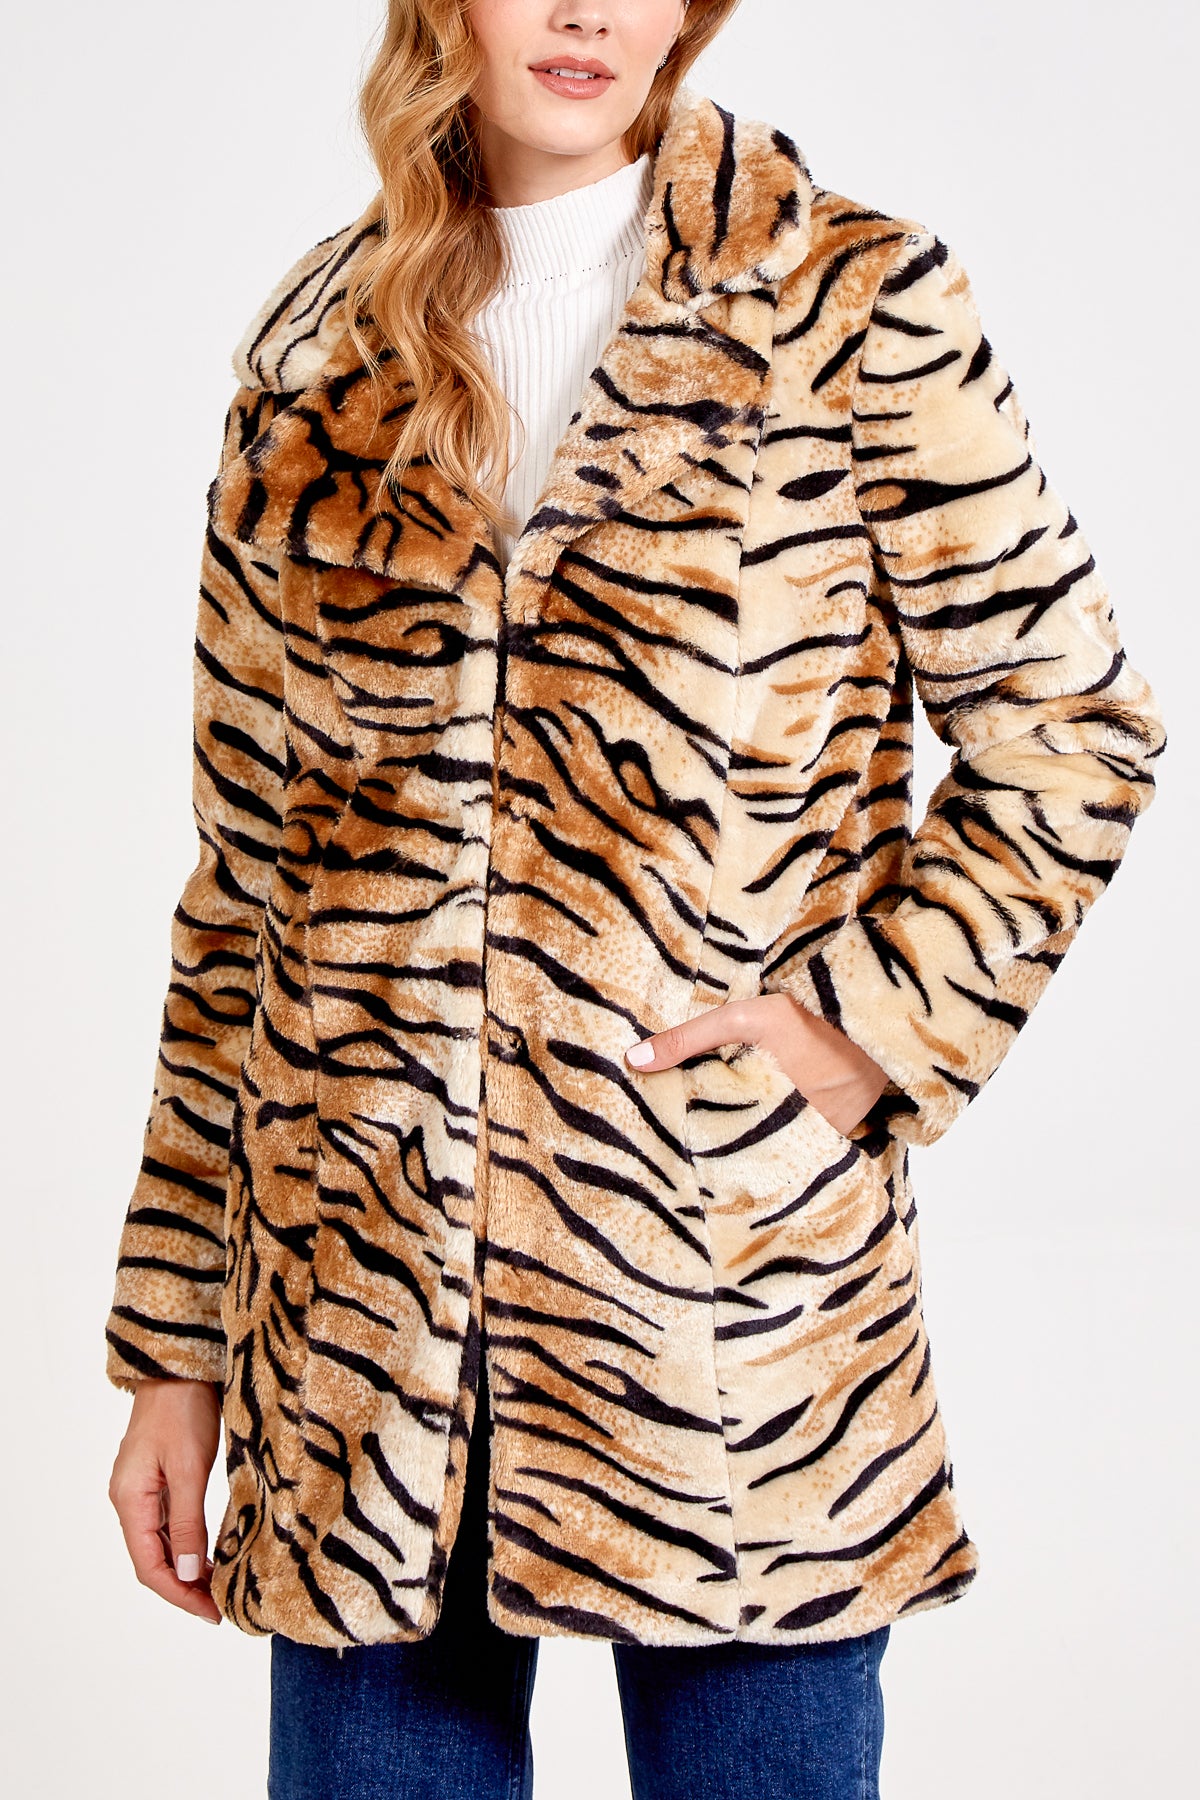 Tiger Print Faux Fur Coat